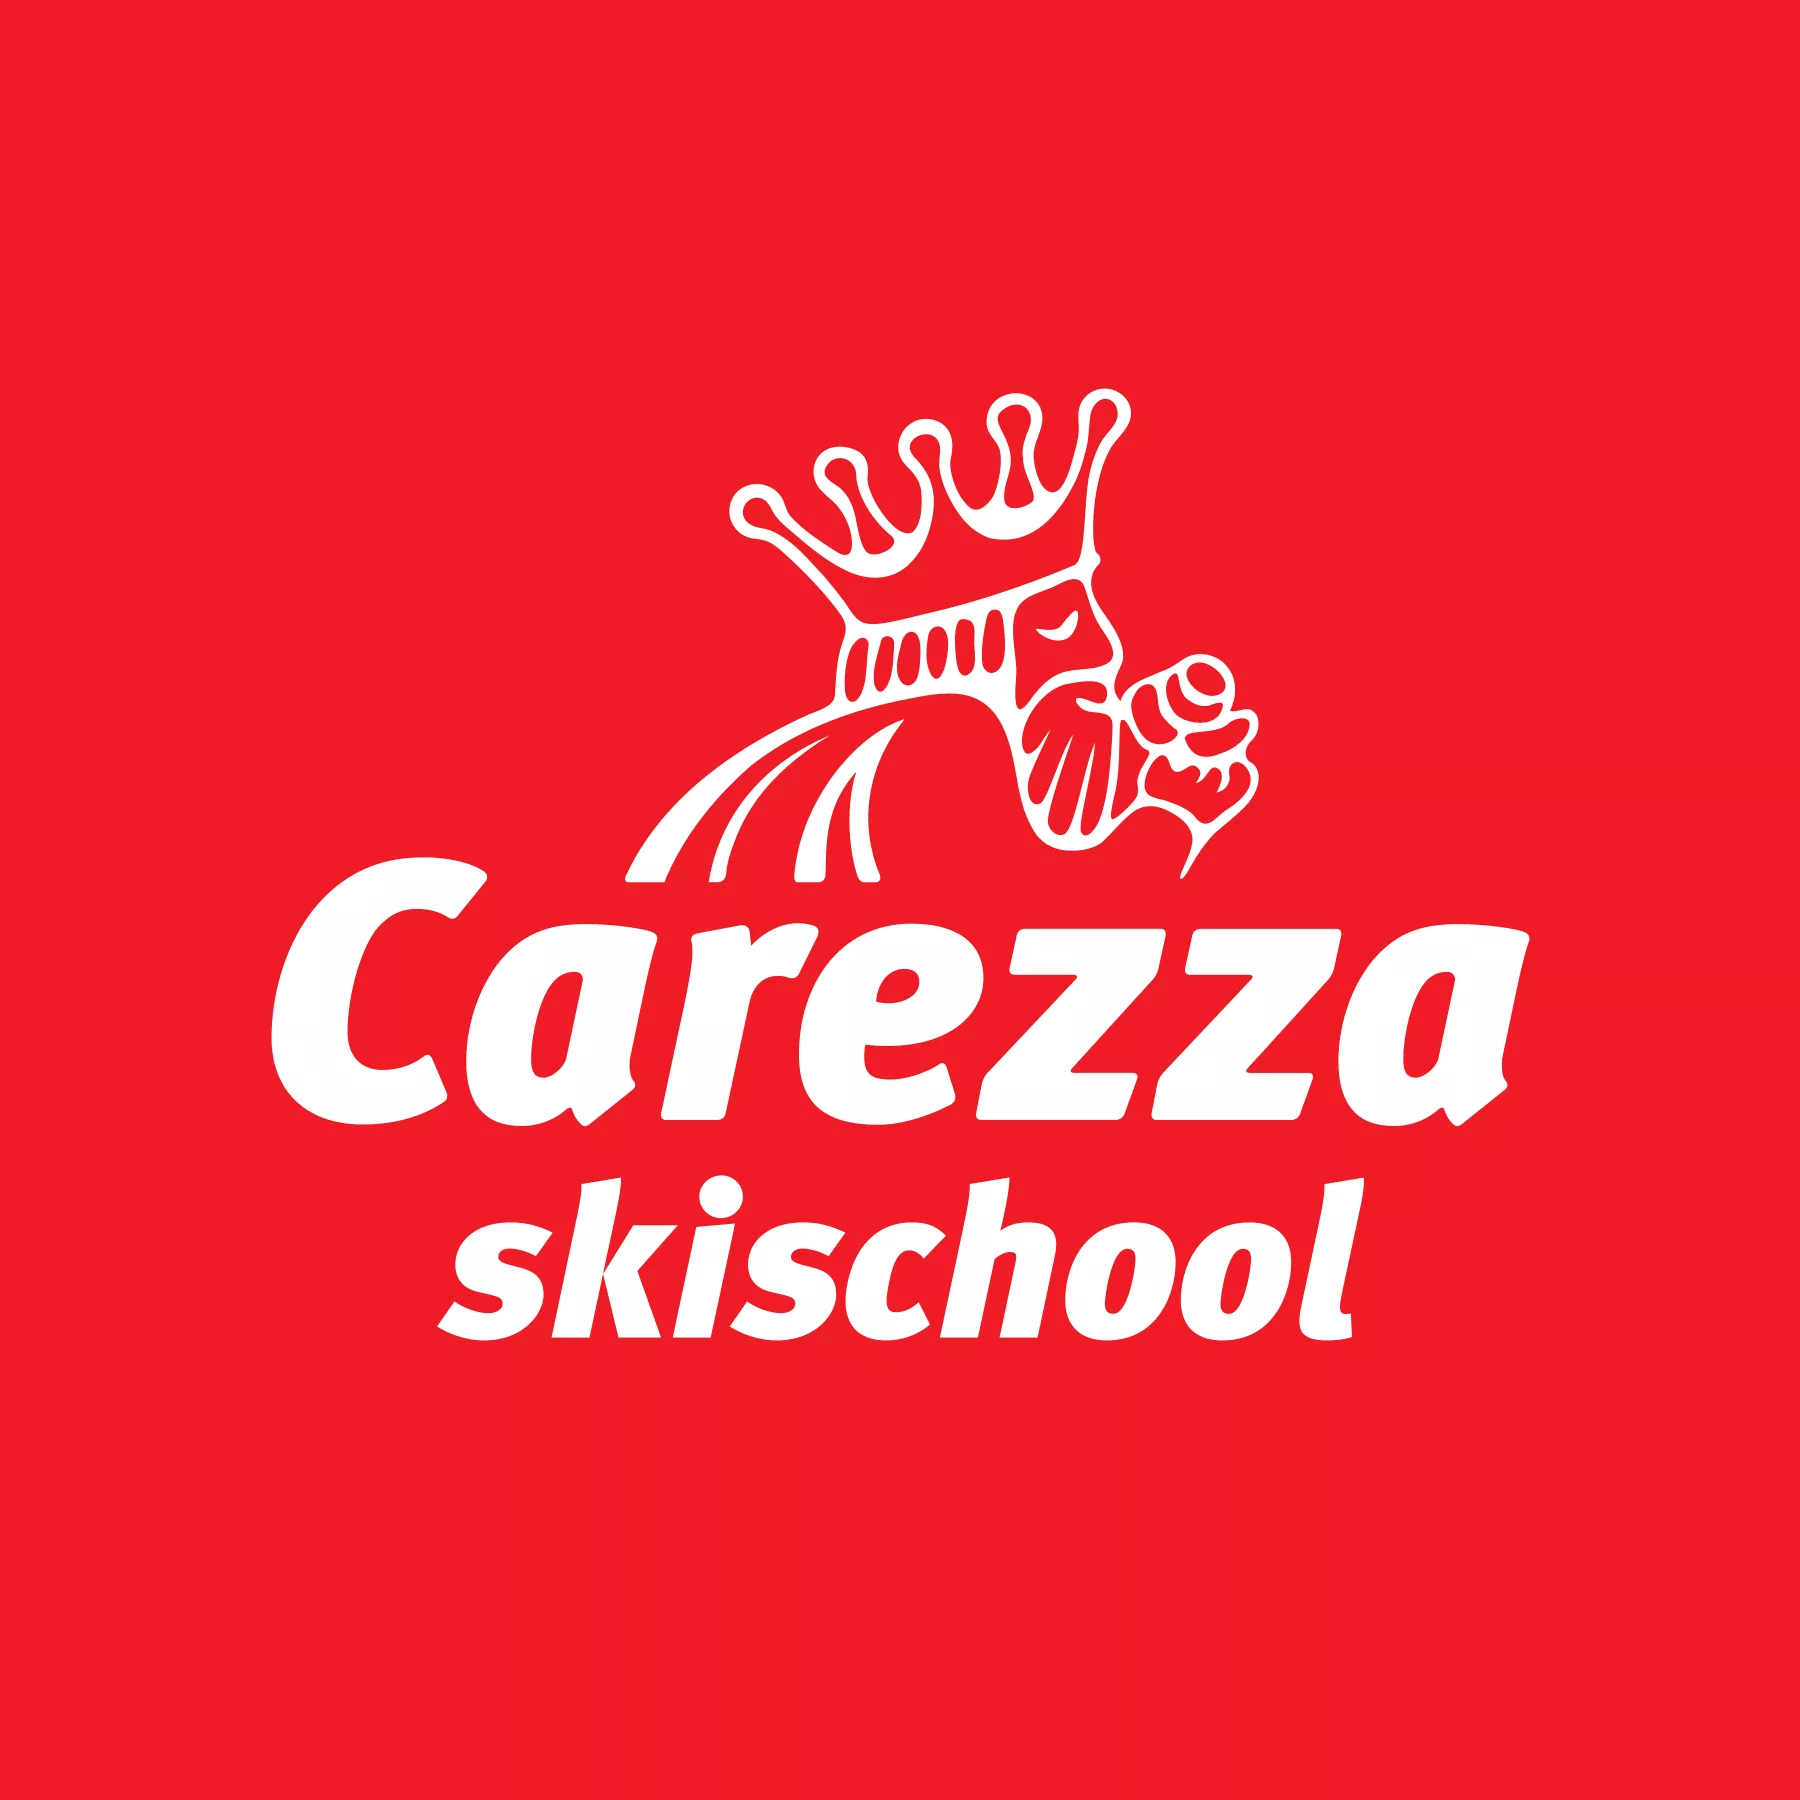 Ski School Carezza